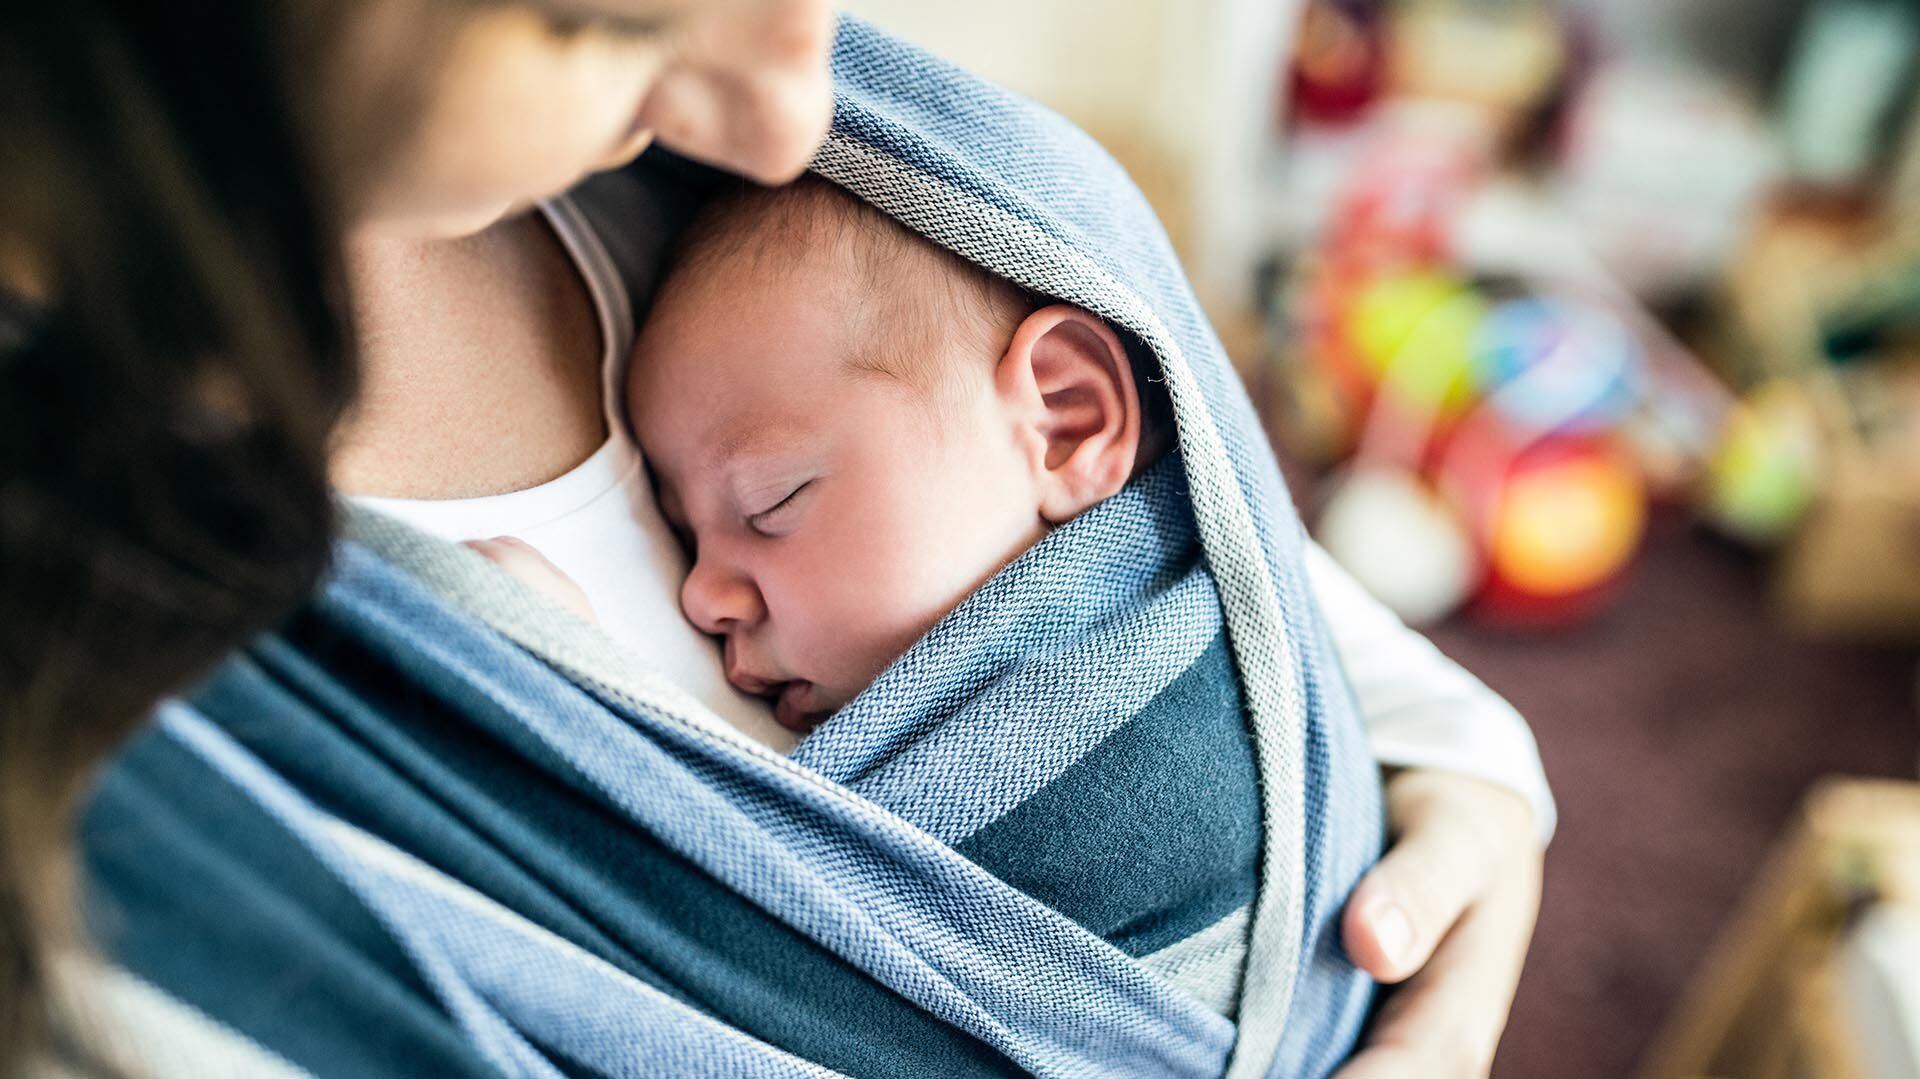 La importancia de atender el llanto de un bebé radica en su impacto en el desarrollo emocional y cognitivo, según estudios recientes (iStock)